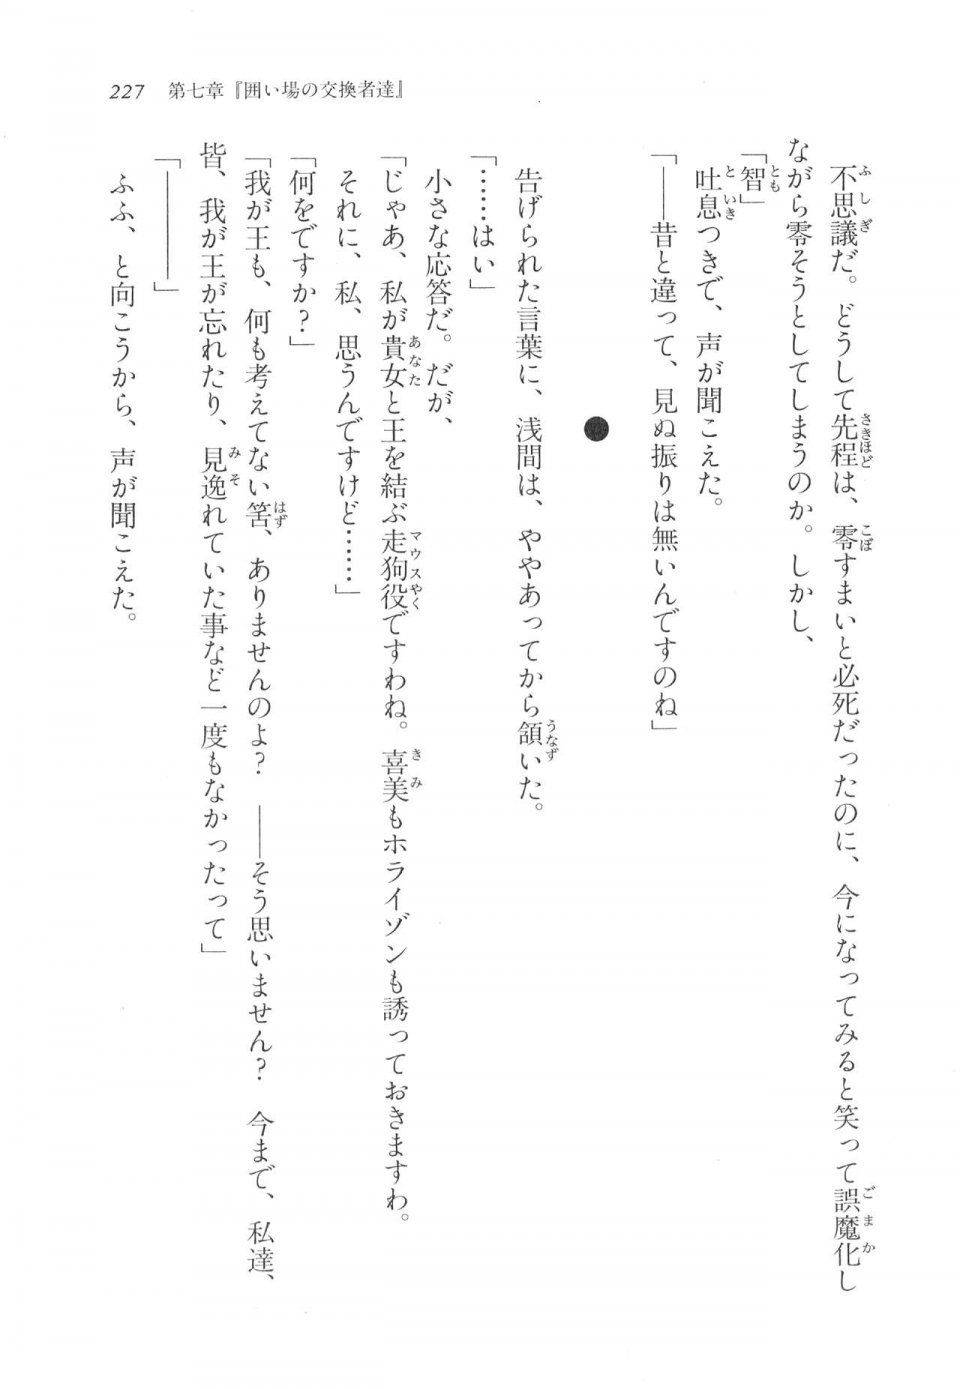 Kyoukai Senjou no Horizon LN Vol 11(5A) - Photo #227